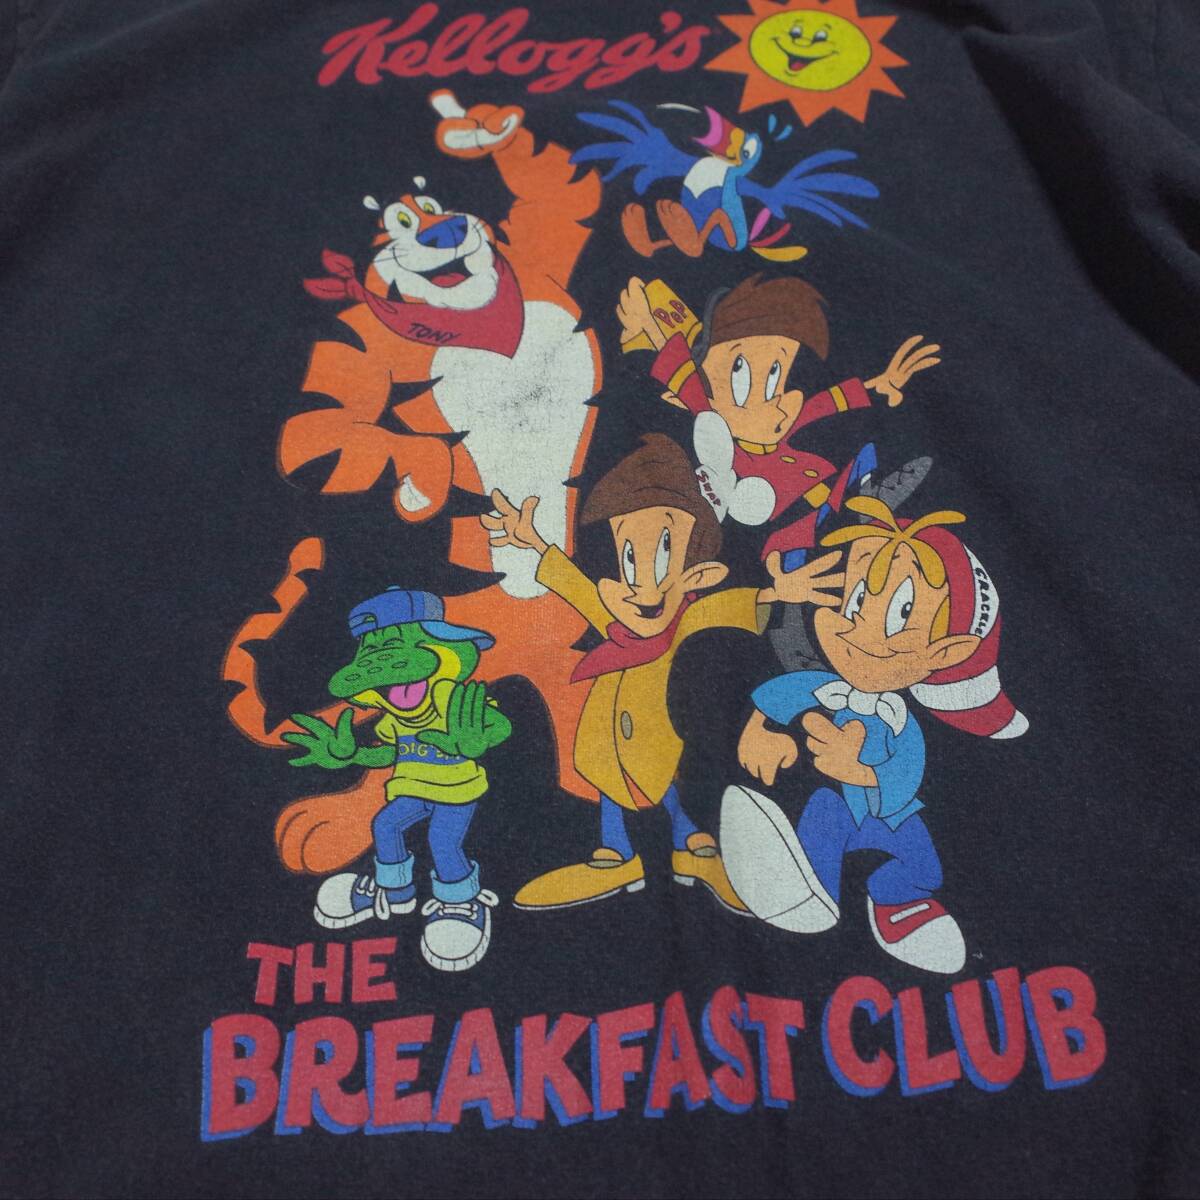 送料無料 野村訓市さん着用 Kellogg's Breakfast Club Tシャツ Kelloggs ケロッグ ブレックファストクラブ L vintage 企業 フェード